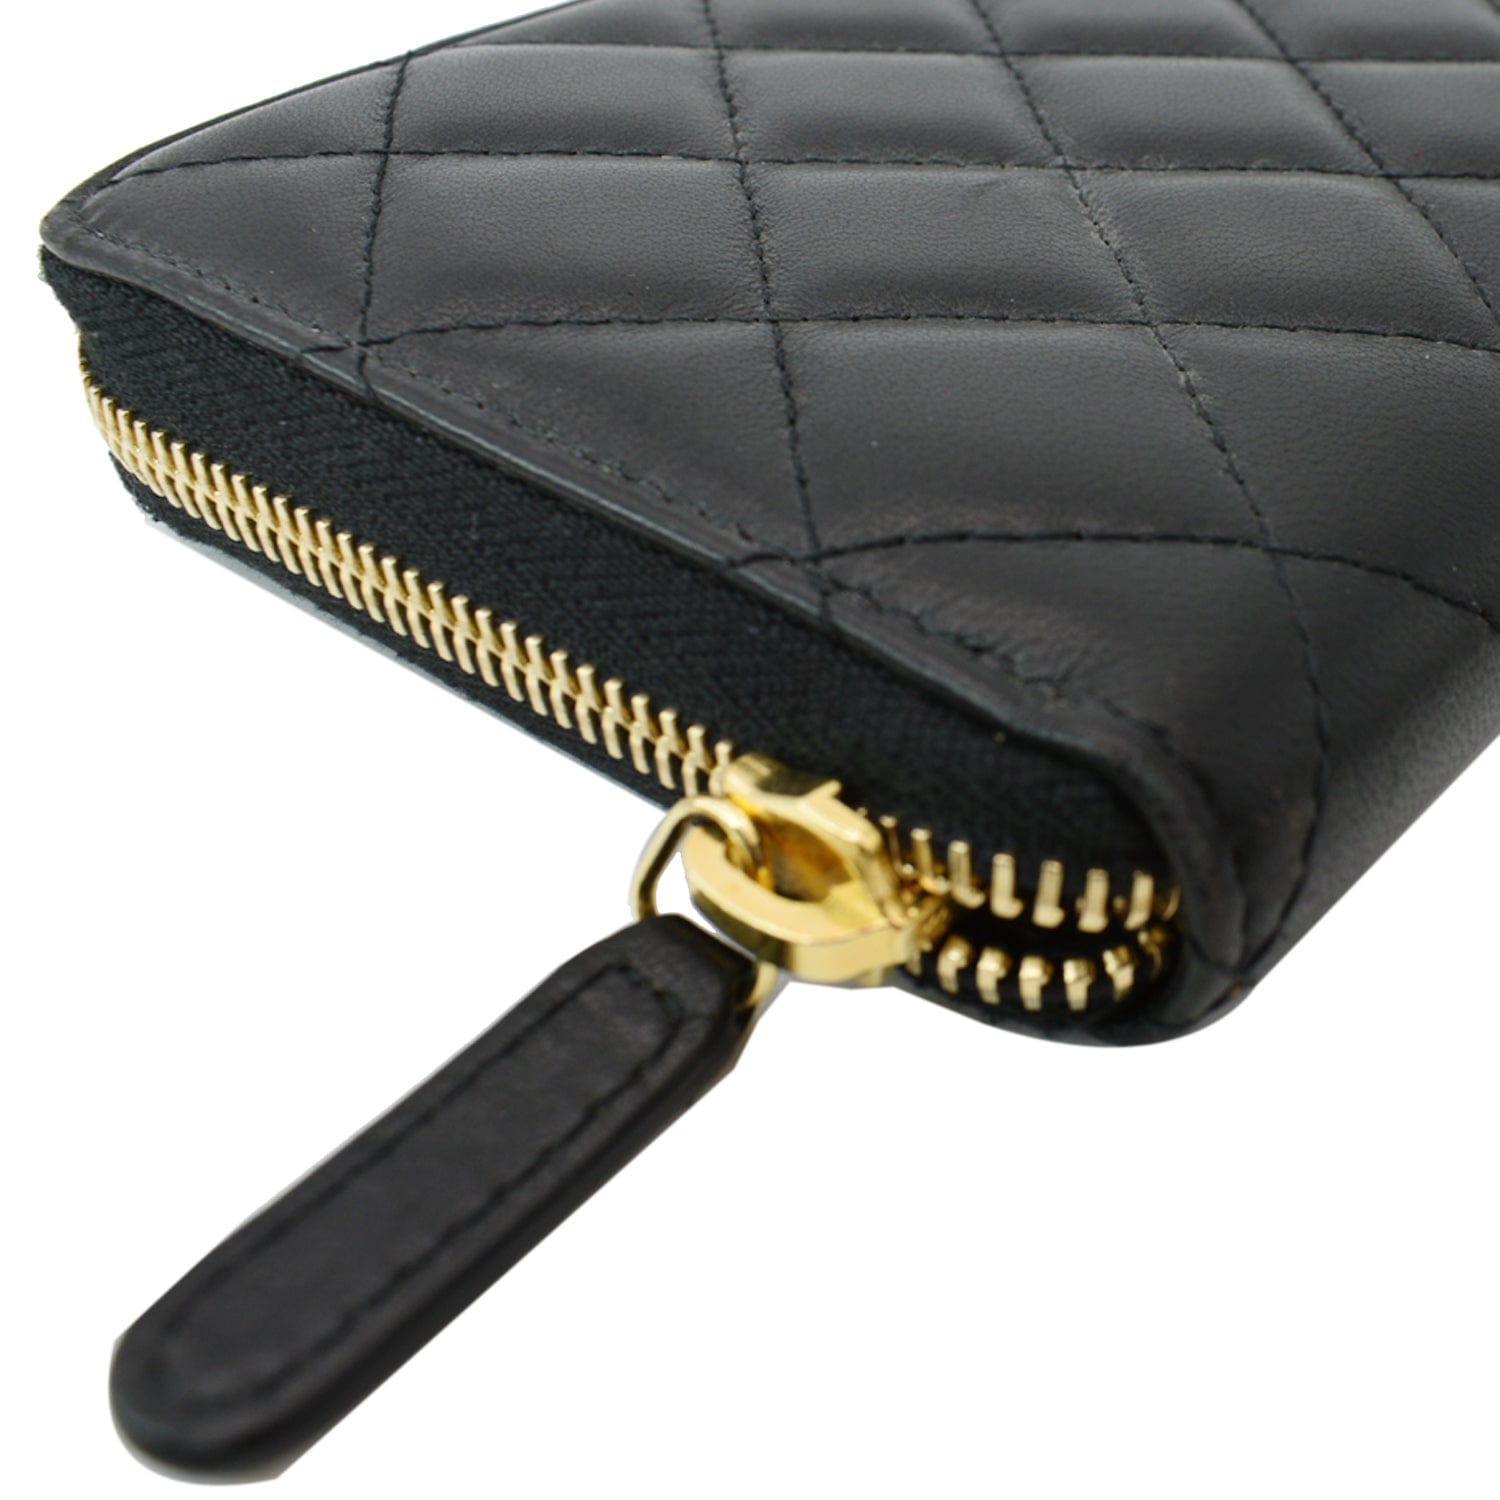 chanel wallet zipper leather